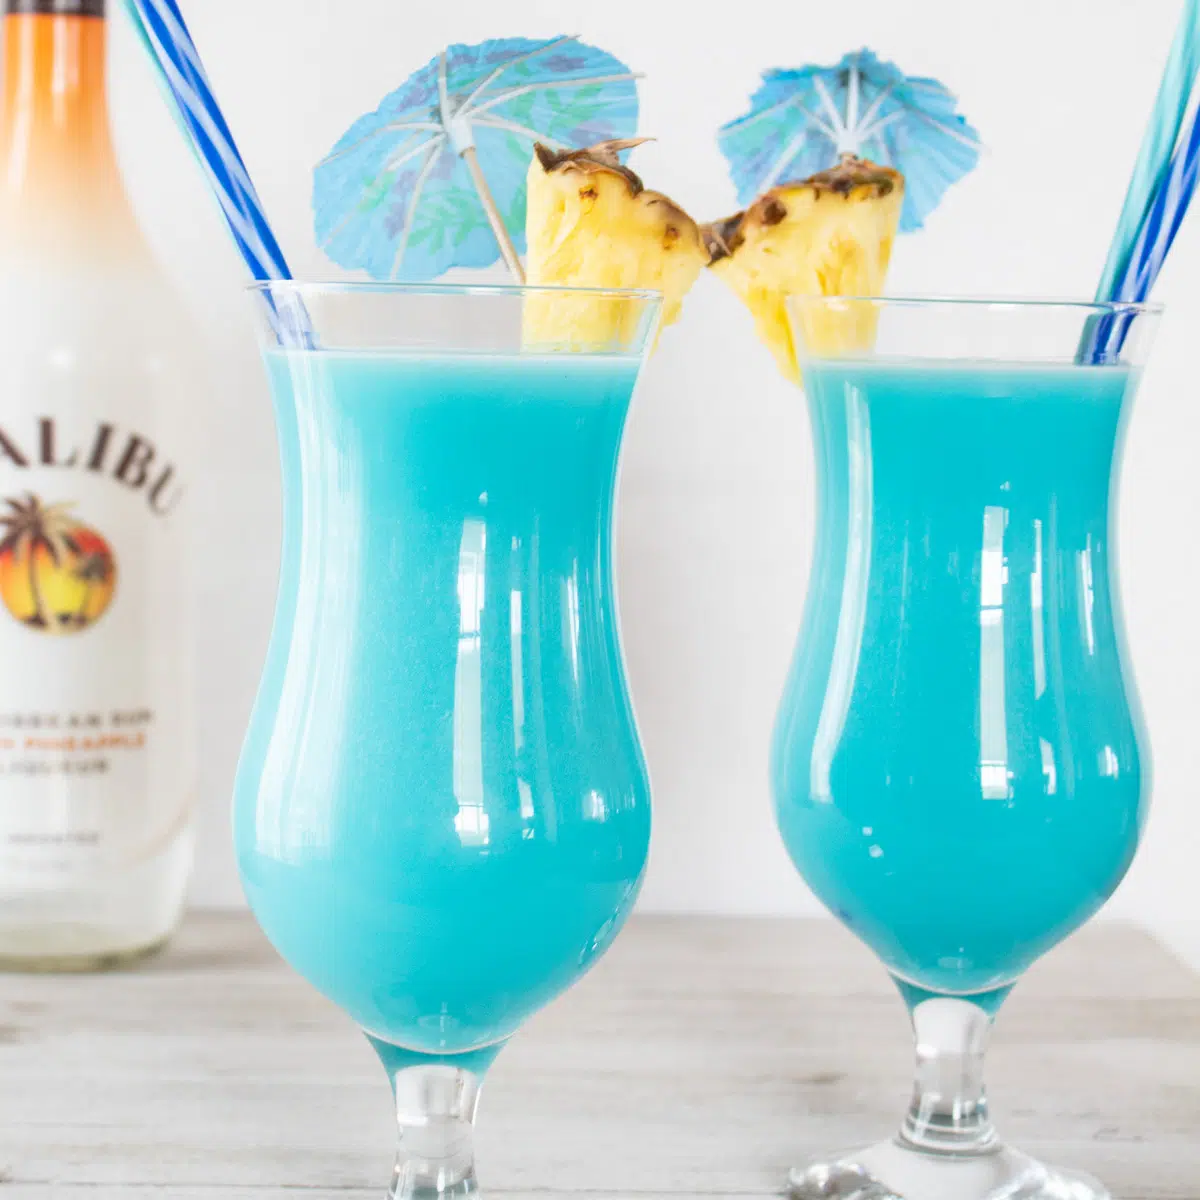 Cocktail hawaïen bleu surgelé servi dans des verres Hurricane avec garniture d'ananas.